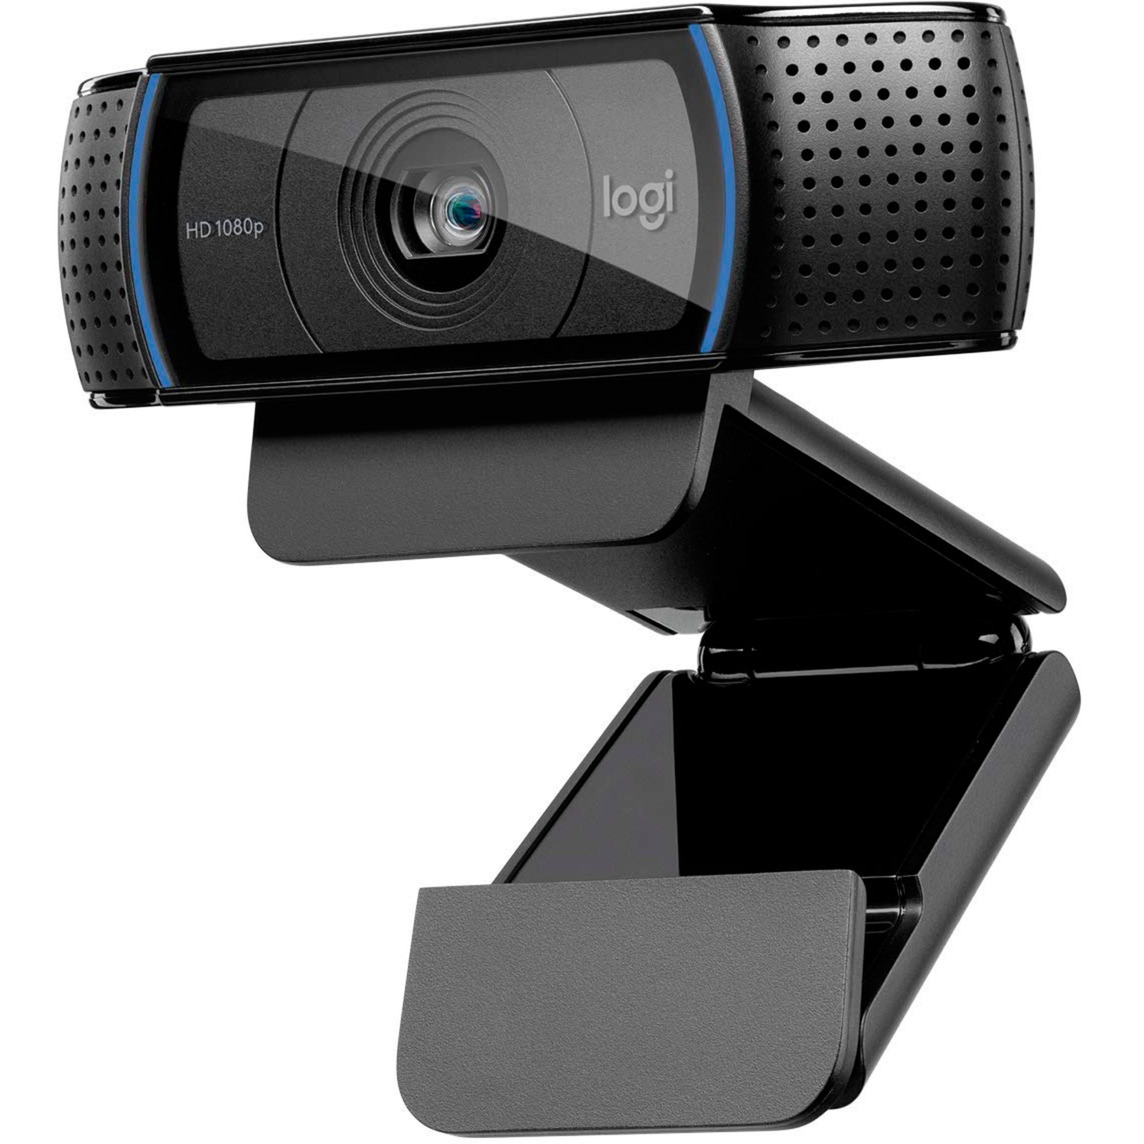 Image of Alternate - HD Pro Webcam C920 online einkaufen bei Alternate